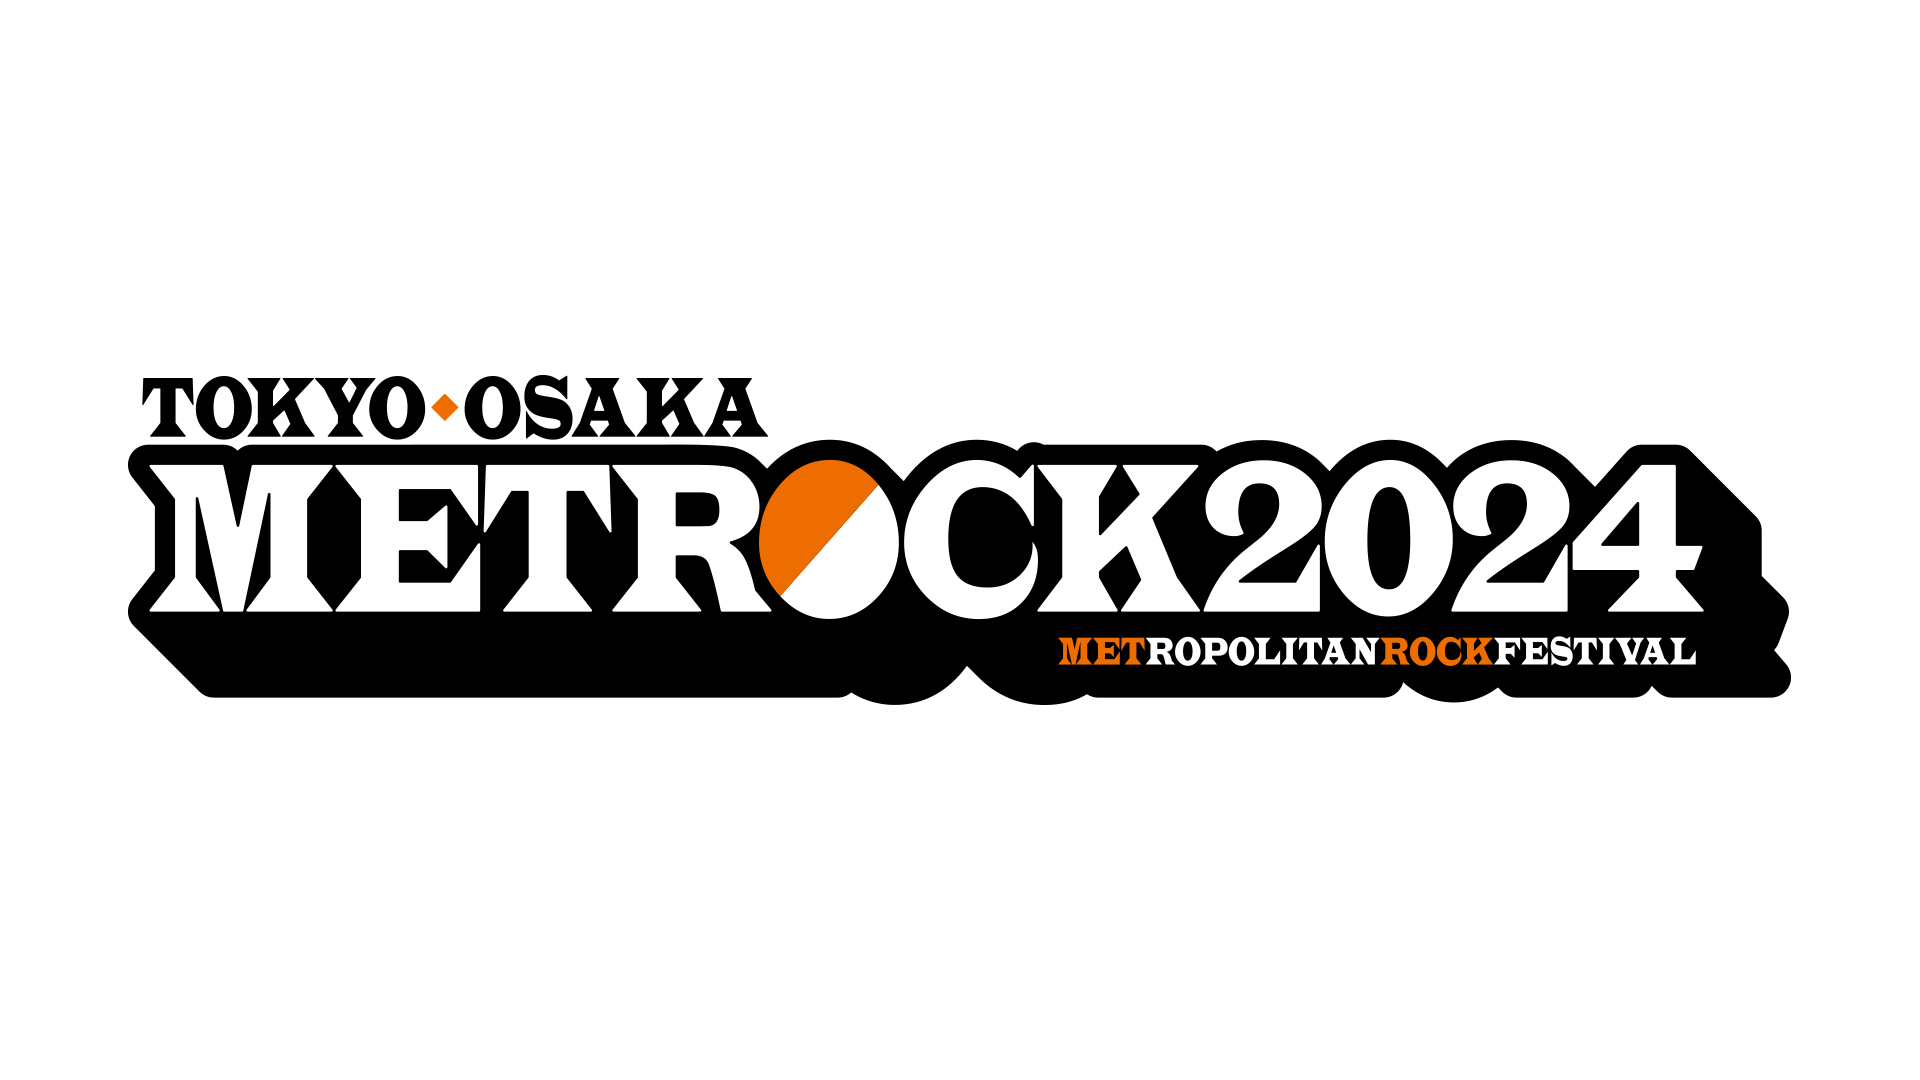 【MUSIC ON! TV（エムオン!）】
METROCK 2024 ライブスペシャル
エムオン!で6/29(土)、30(日)に
計10時間にわたってテレビ独占放送！
出演アーティストのサイン入りTシャツが当たる
プレゼントキャンペーンも実施決定！